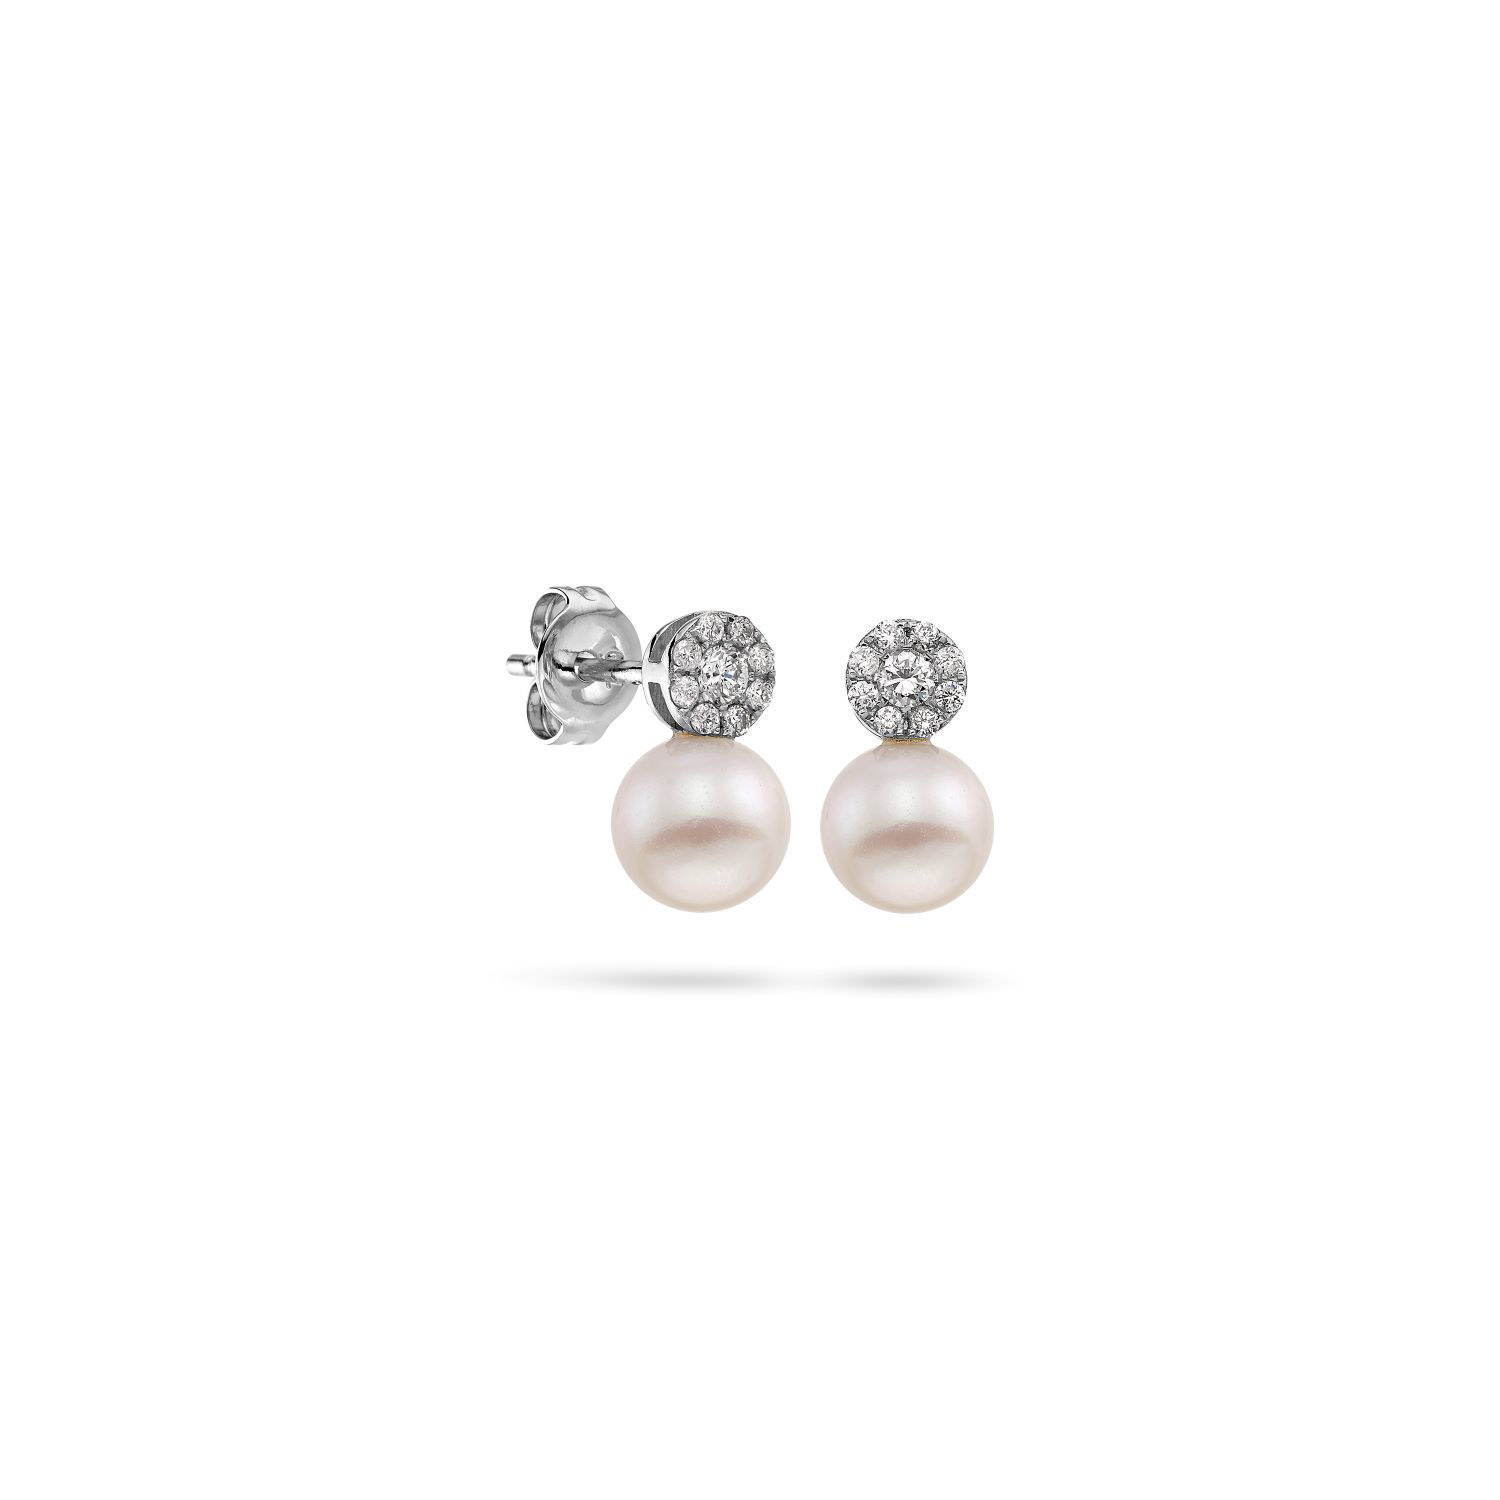 Σκουλαρίκια Pearls από λευκό χρυσό 18K με freshwater pearls και διαμάντια μπριγιάν